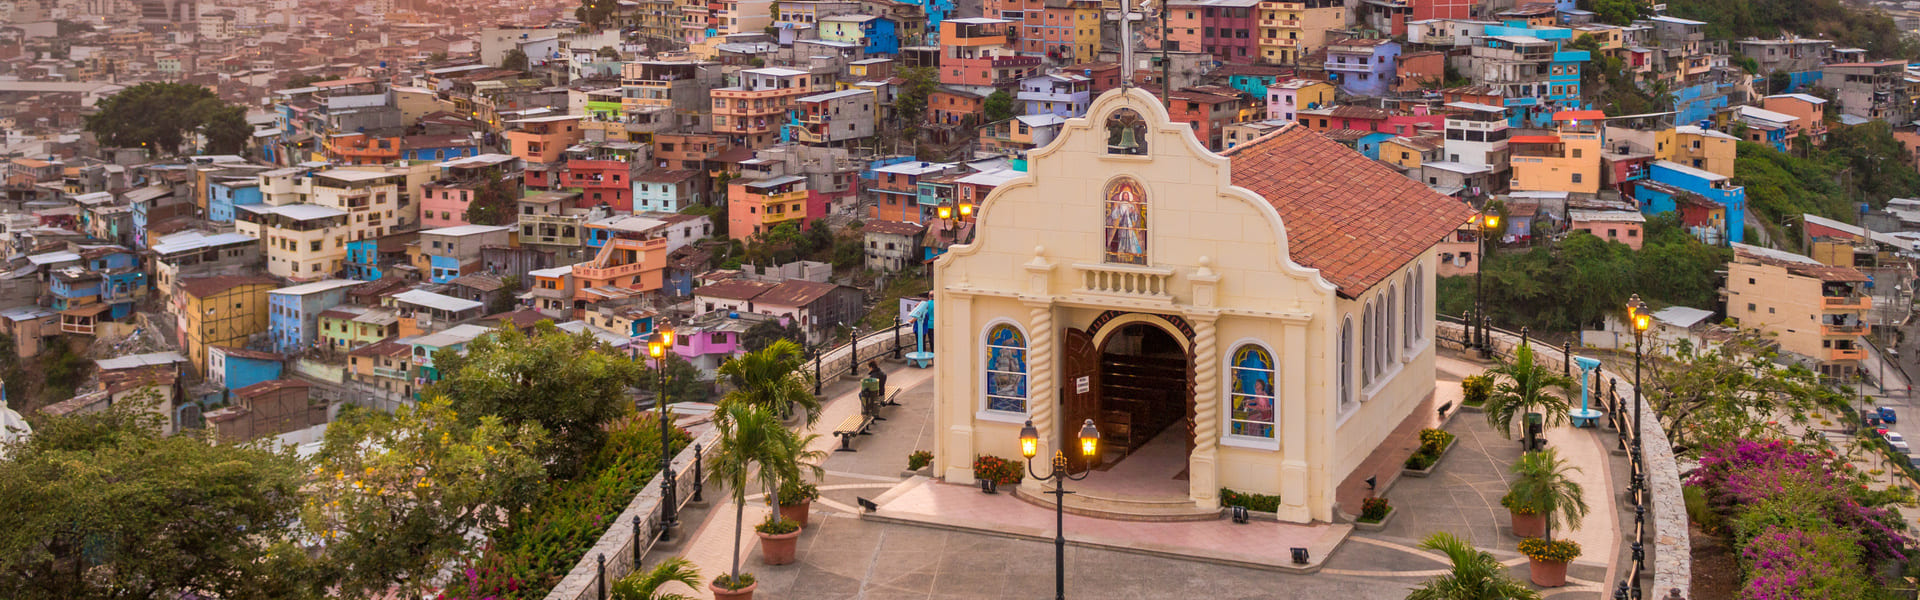 Tour por la ciudad de Guayaquil